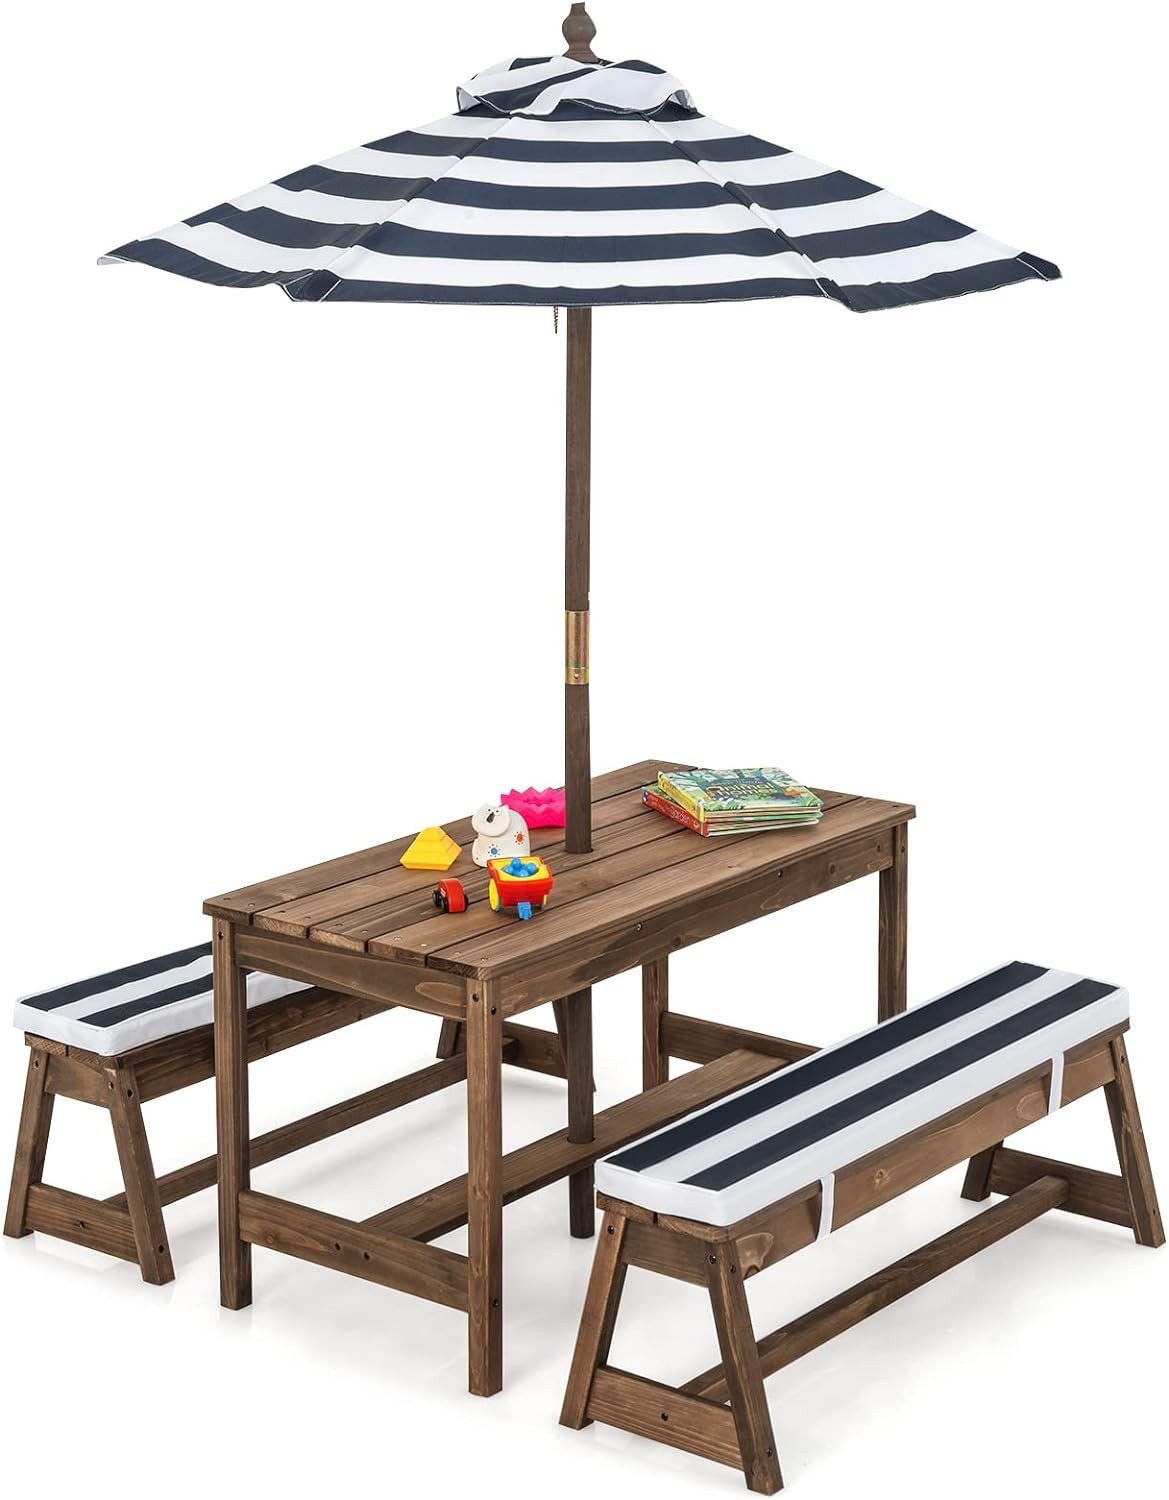 KOMFOTTEU Garten-Kindersitzgruppe Kindermöbelset, 3-Fach Höhenverstellbarer Sonnenschirm